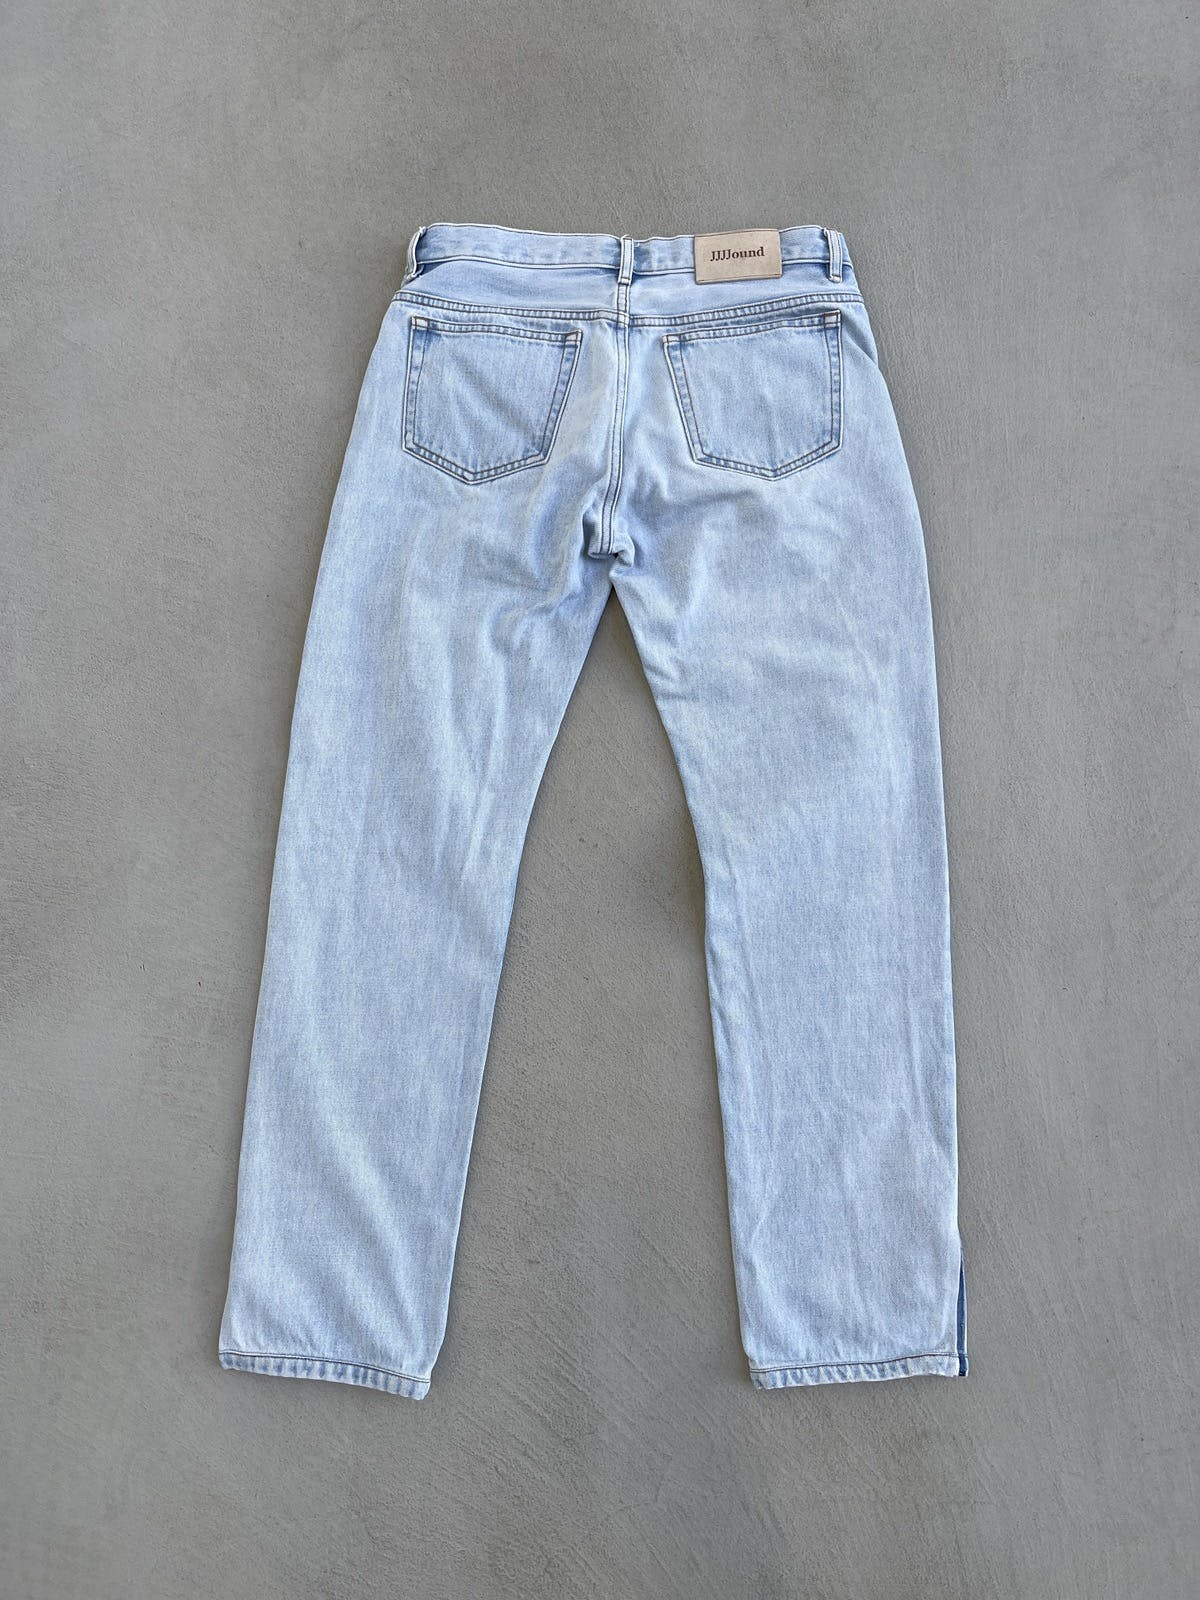 A.P.C. x Jjjjound Petit Standard Flare Denim Jeans - 3